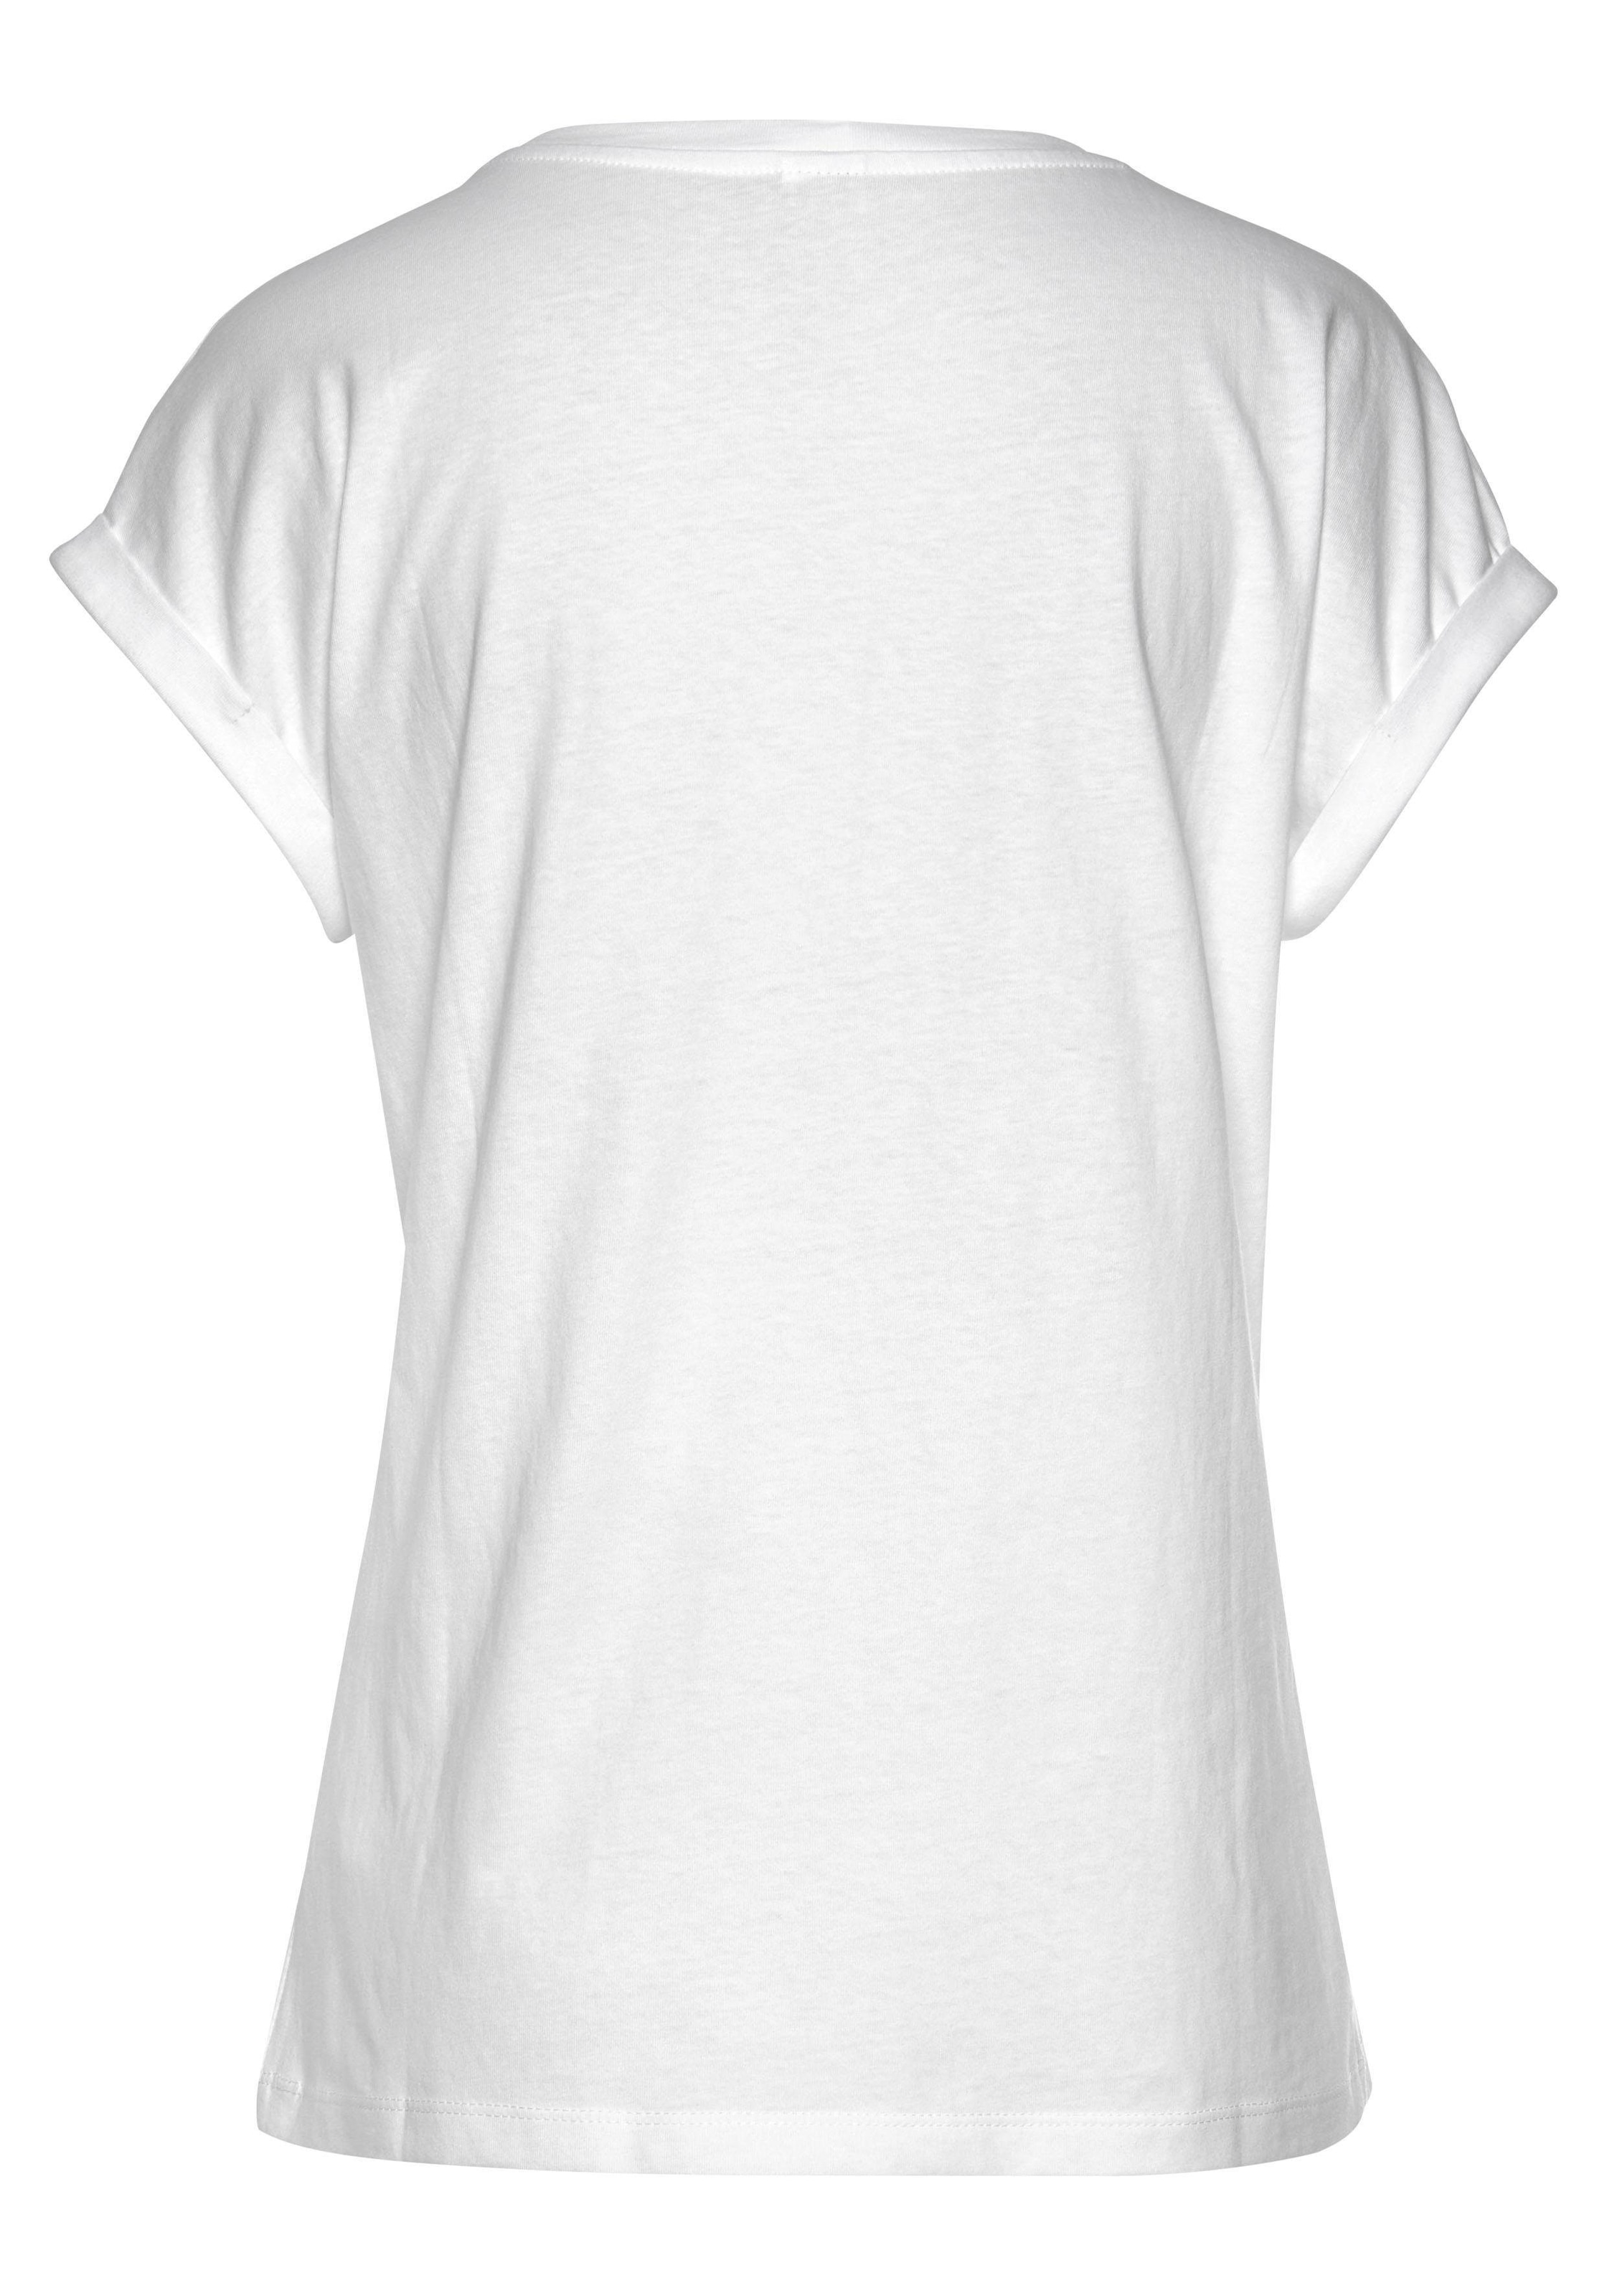 Venice Beach Rundhalsshirt, mit Frontdruck, T-shirt aus Baumwolle, Kurzarmshirt, Basic